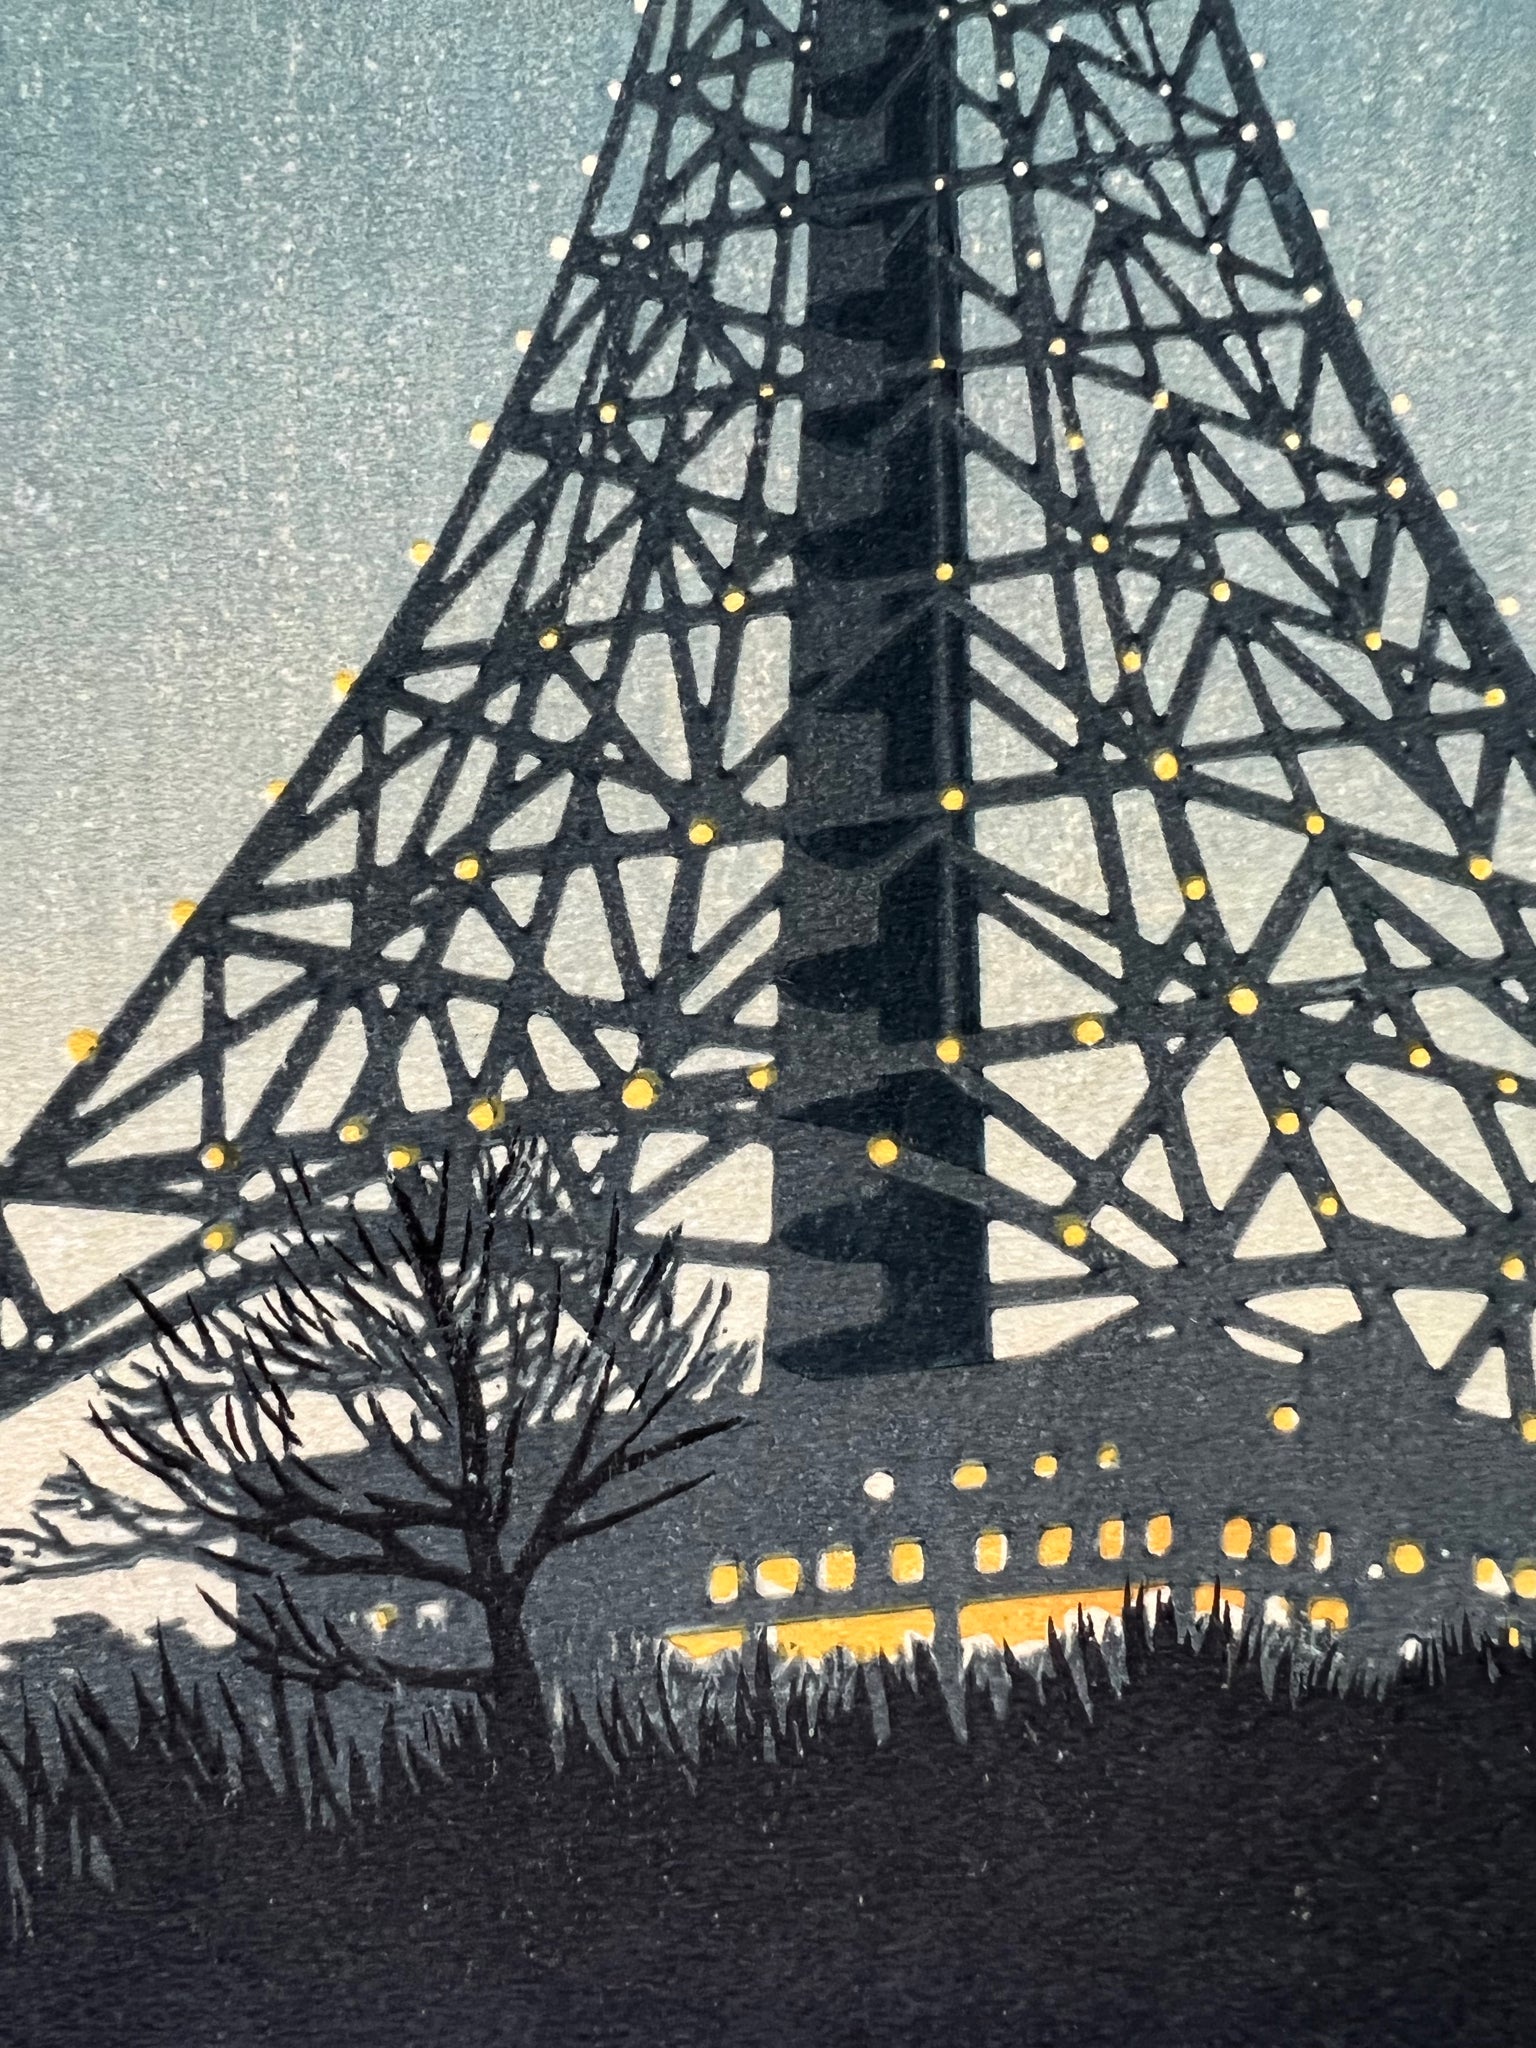 estampe japonaise shin-hanga tour de Tokyo illuminée la nuit, gros plan sur la base de la tour